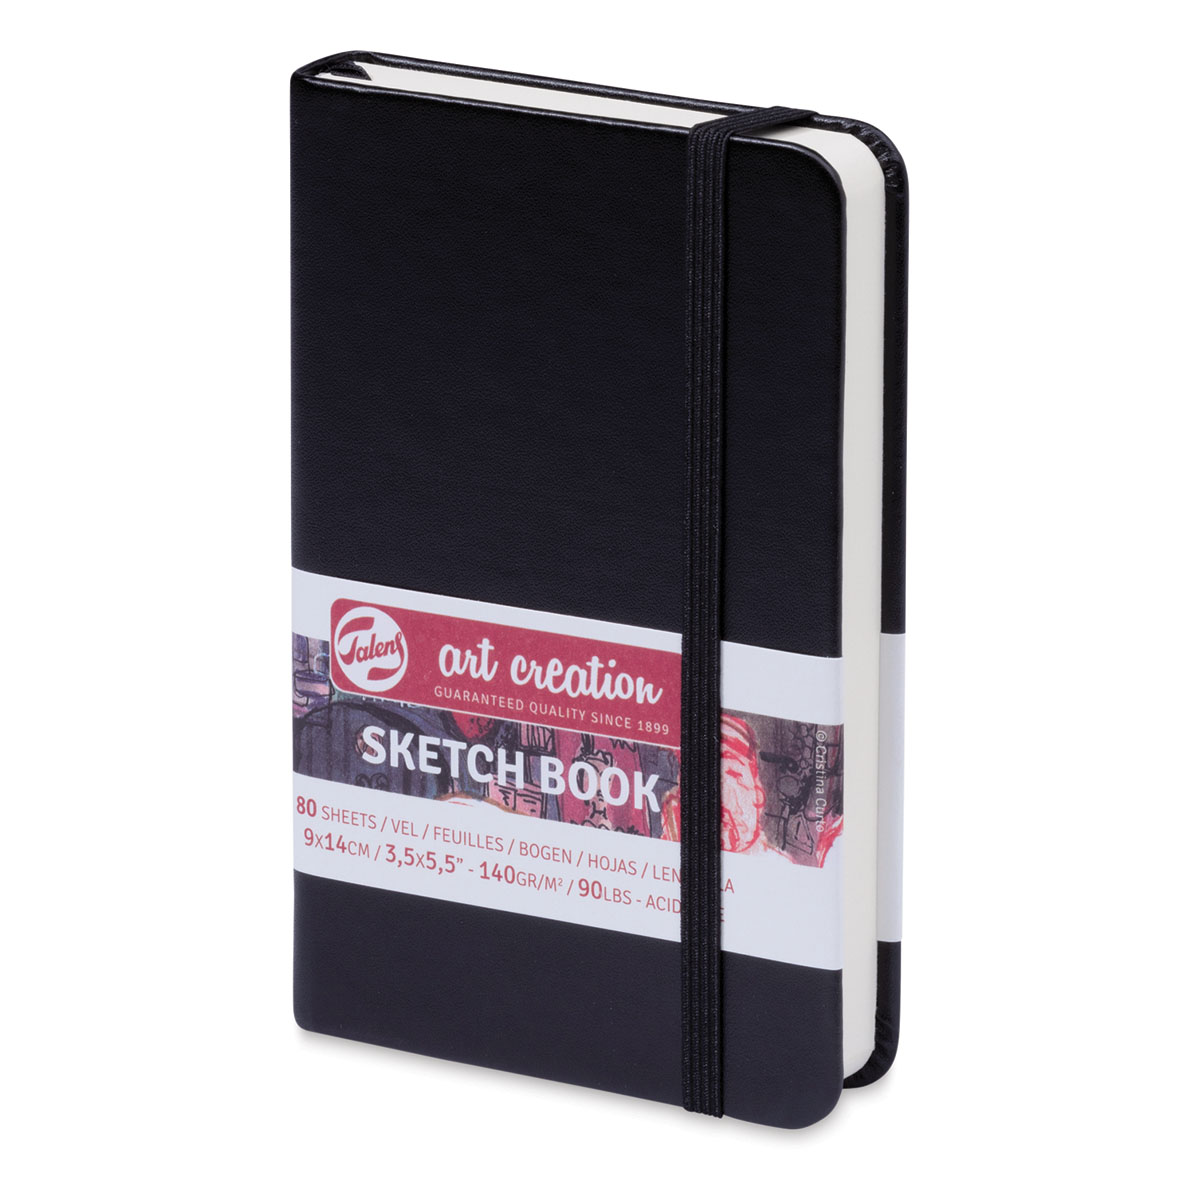 Sketchbook Forest Green 9 x 14 cm 140 g 80 Sheets